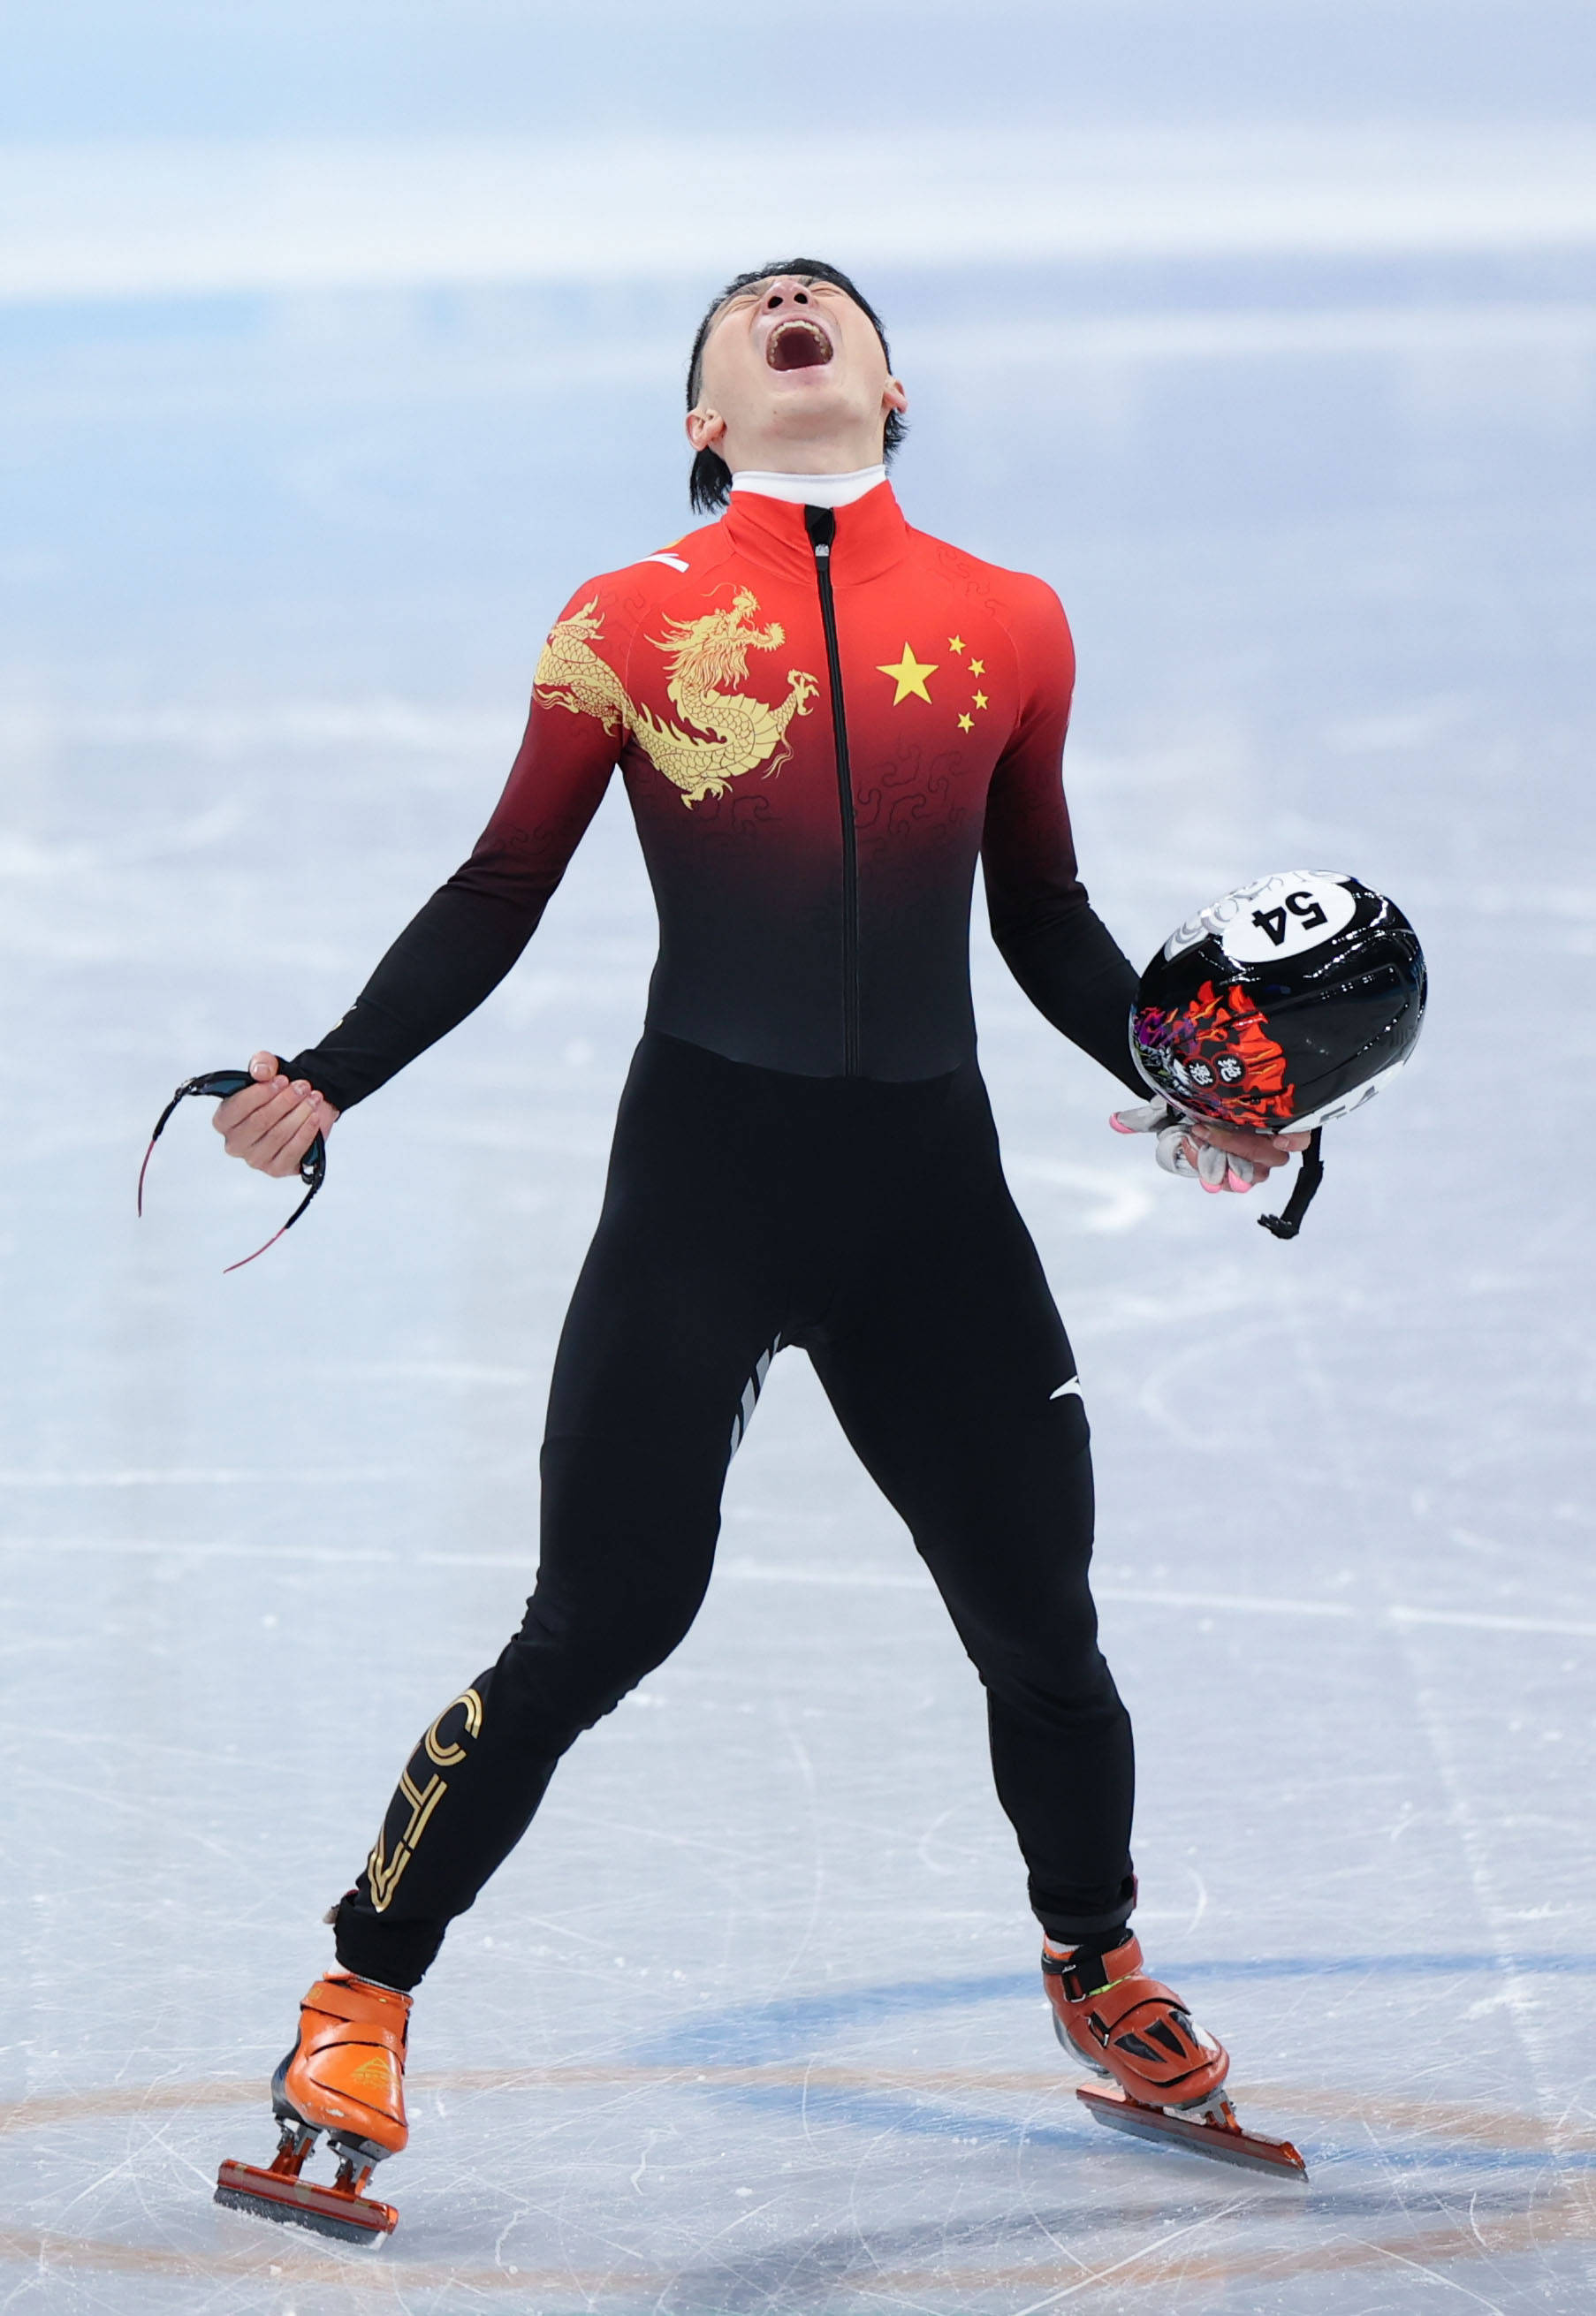 第一枚冬奥会金牌中国选手是谁 中国冬奥会第一名冠军